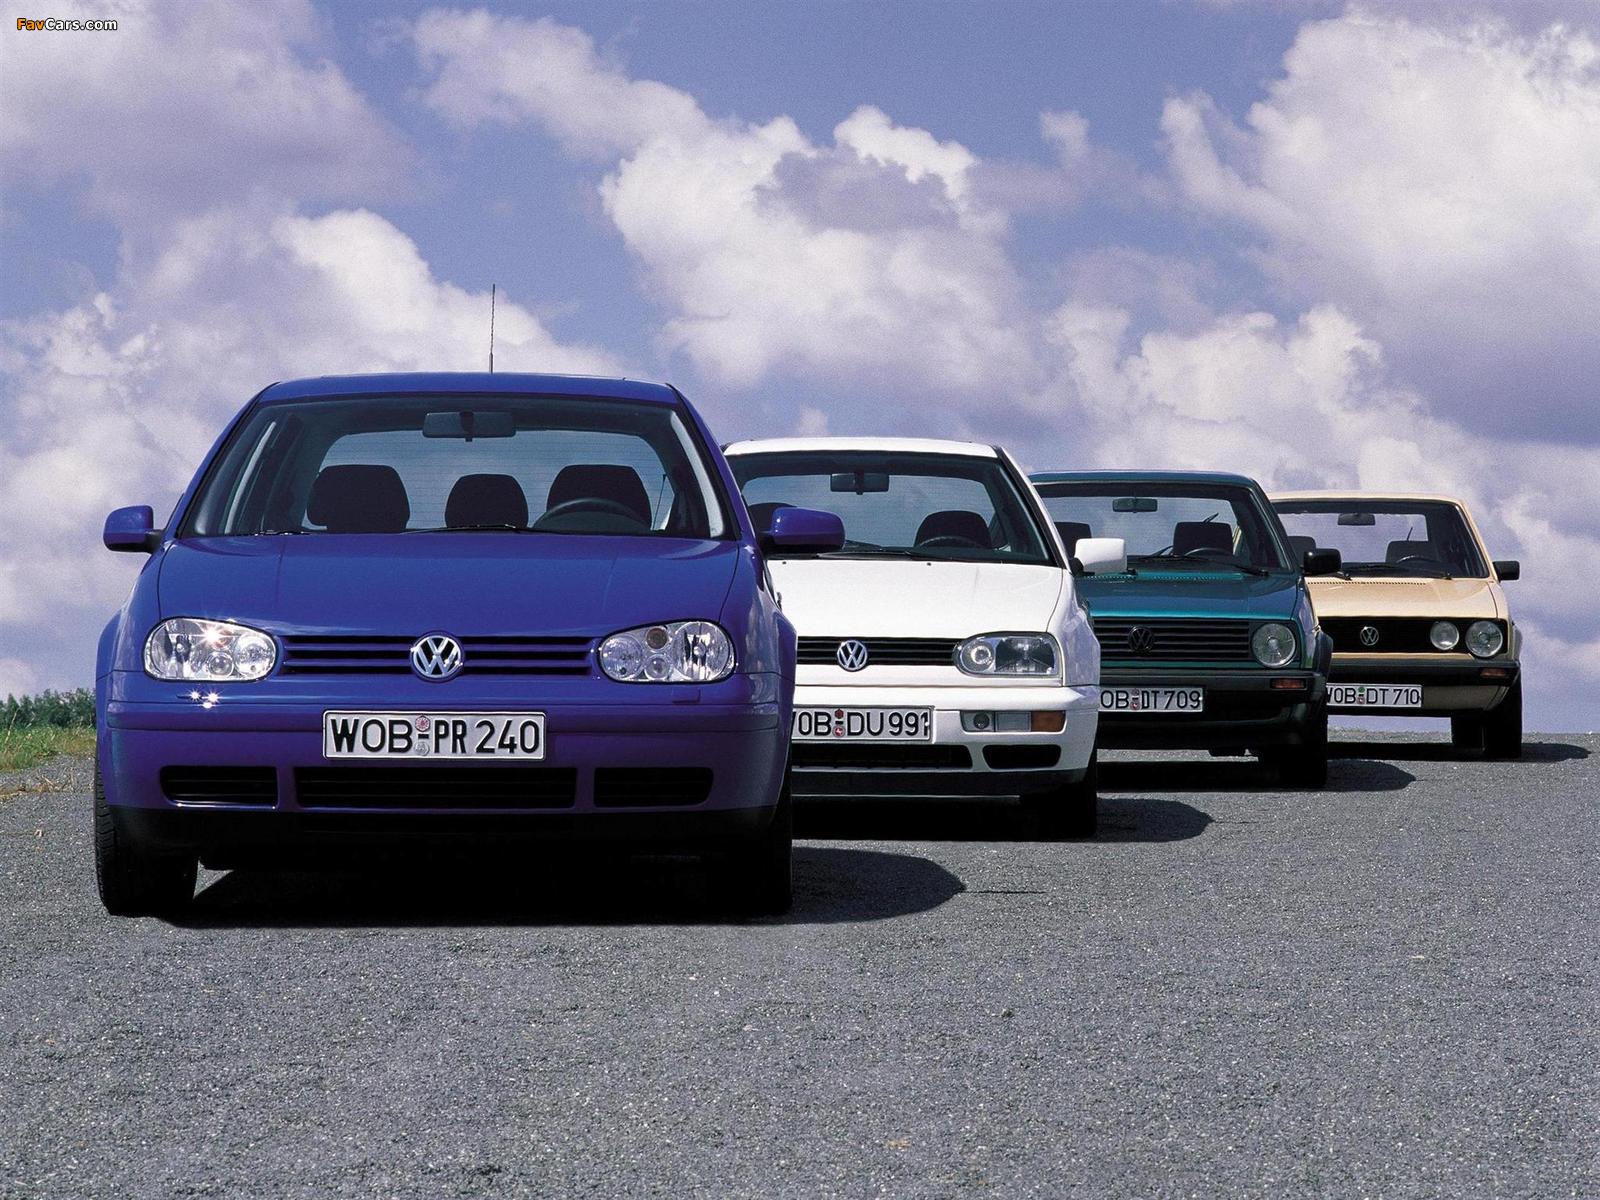 Pictures of Volkswagen Golf (1600 x 1200)